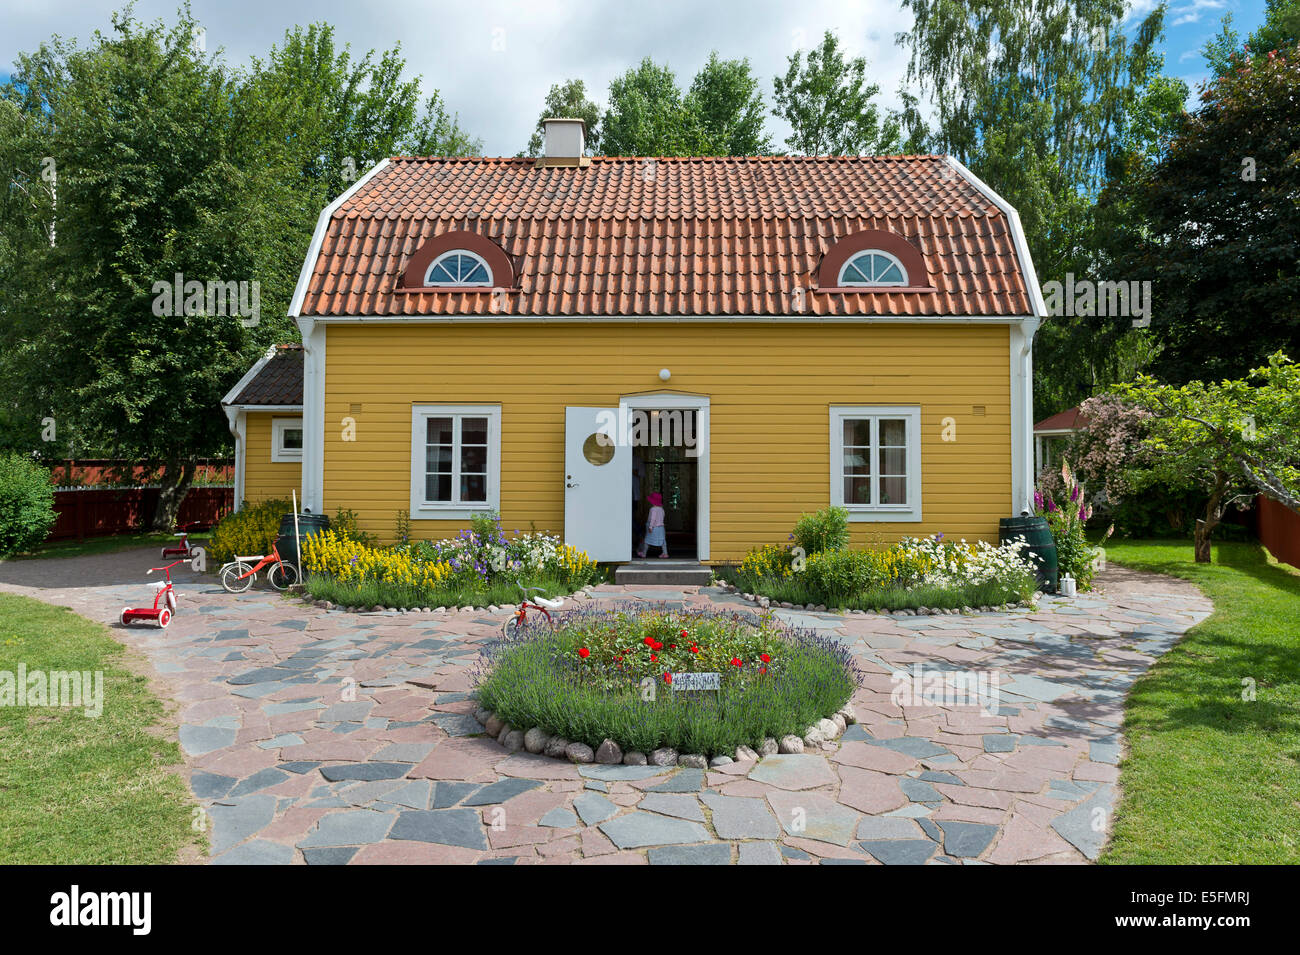 Haus aus dem Kinderbuch "Die Kinder aus Bullerbü" von Astrid Lindgren, Astrid Lindgrens Welt in Vimmerby, Småland Stockfoto